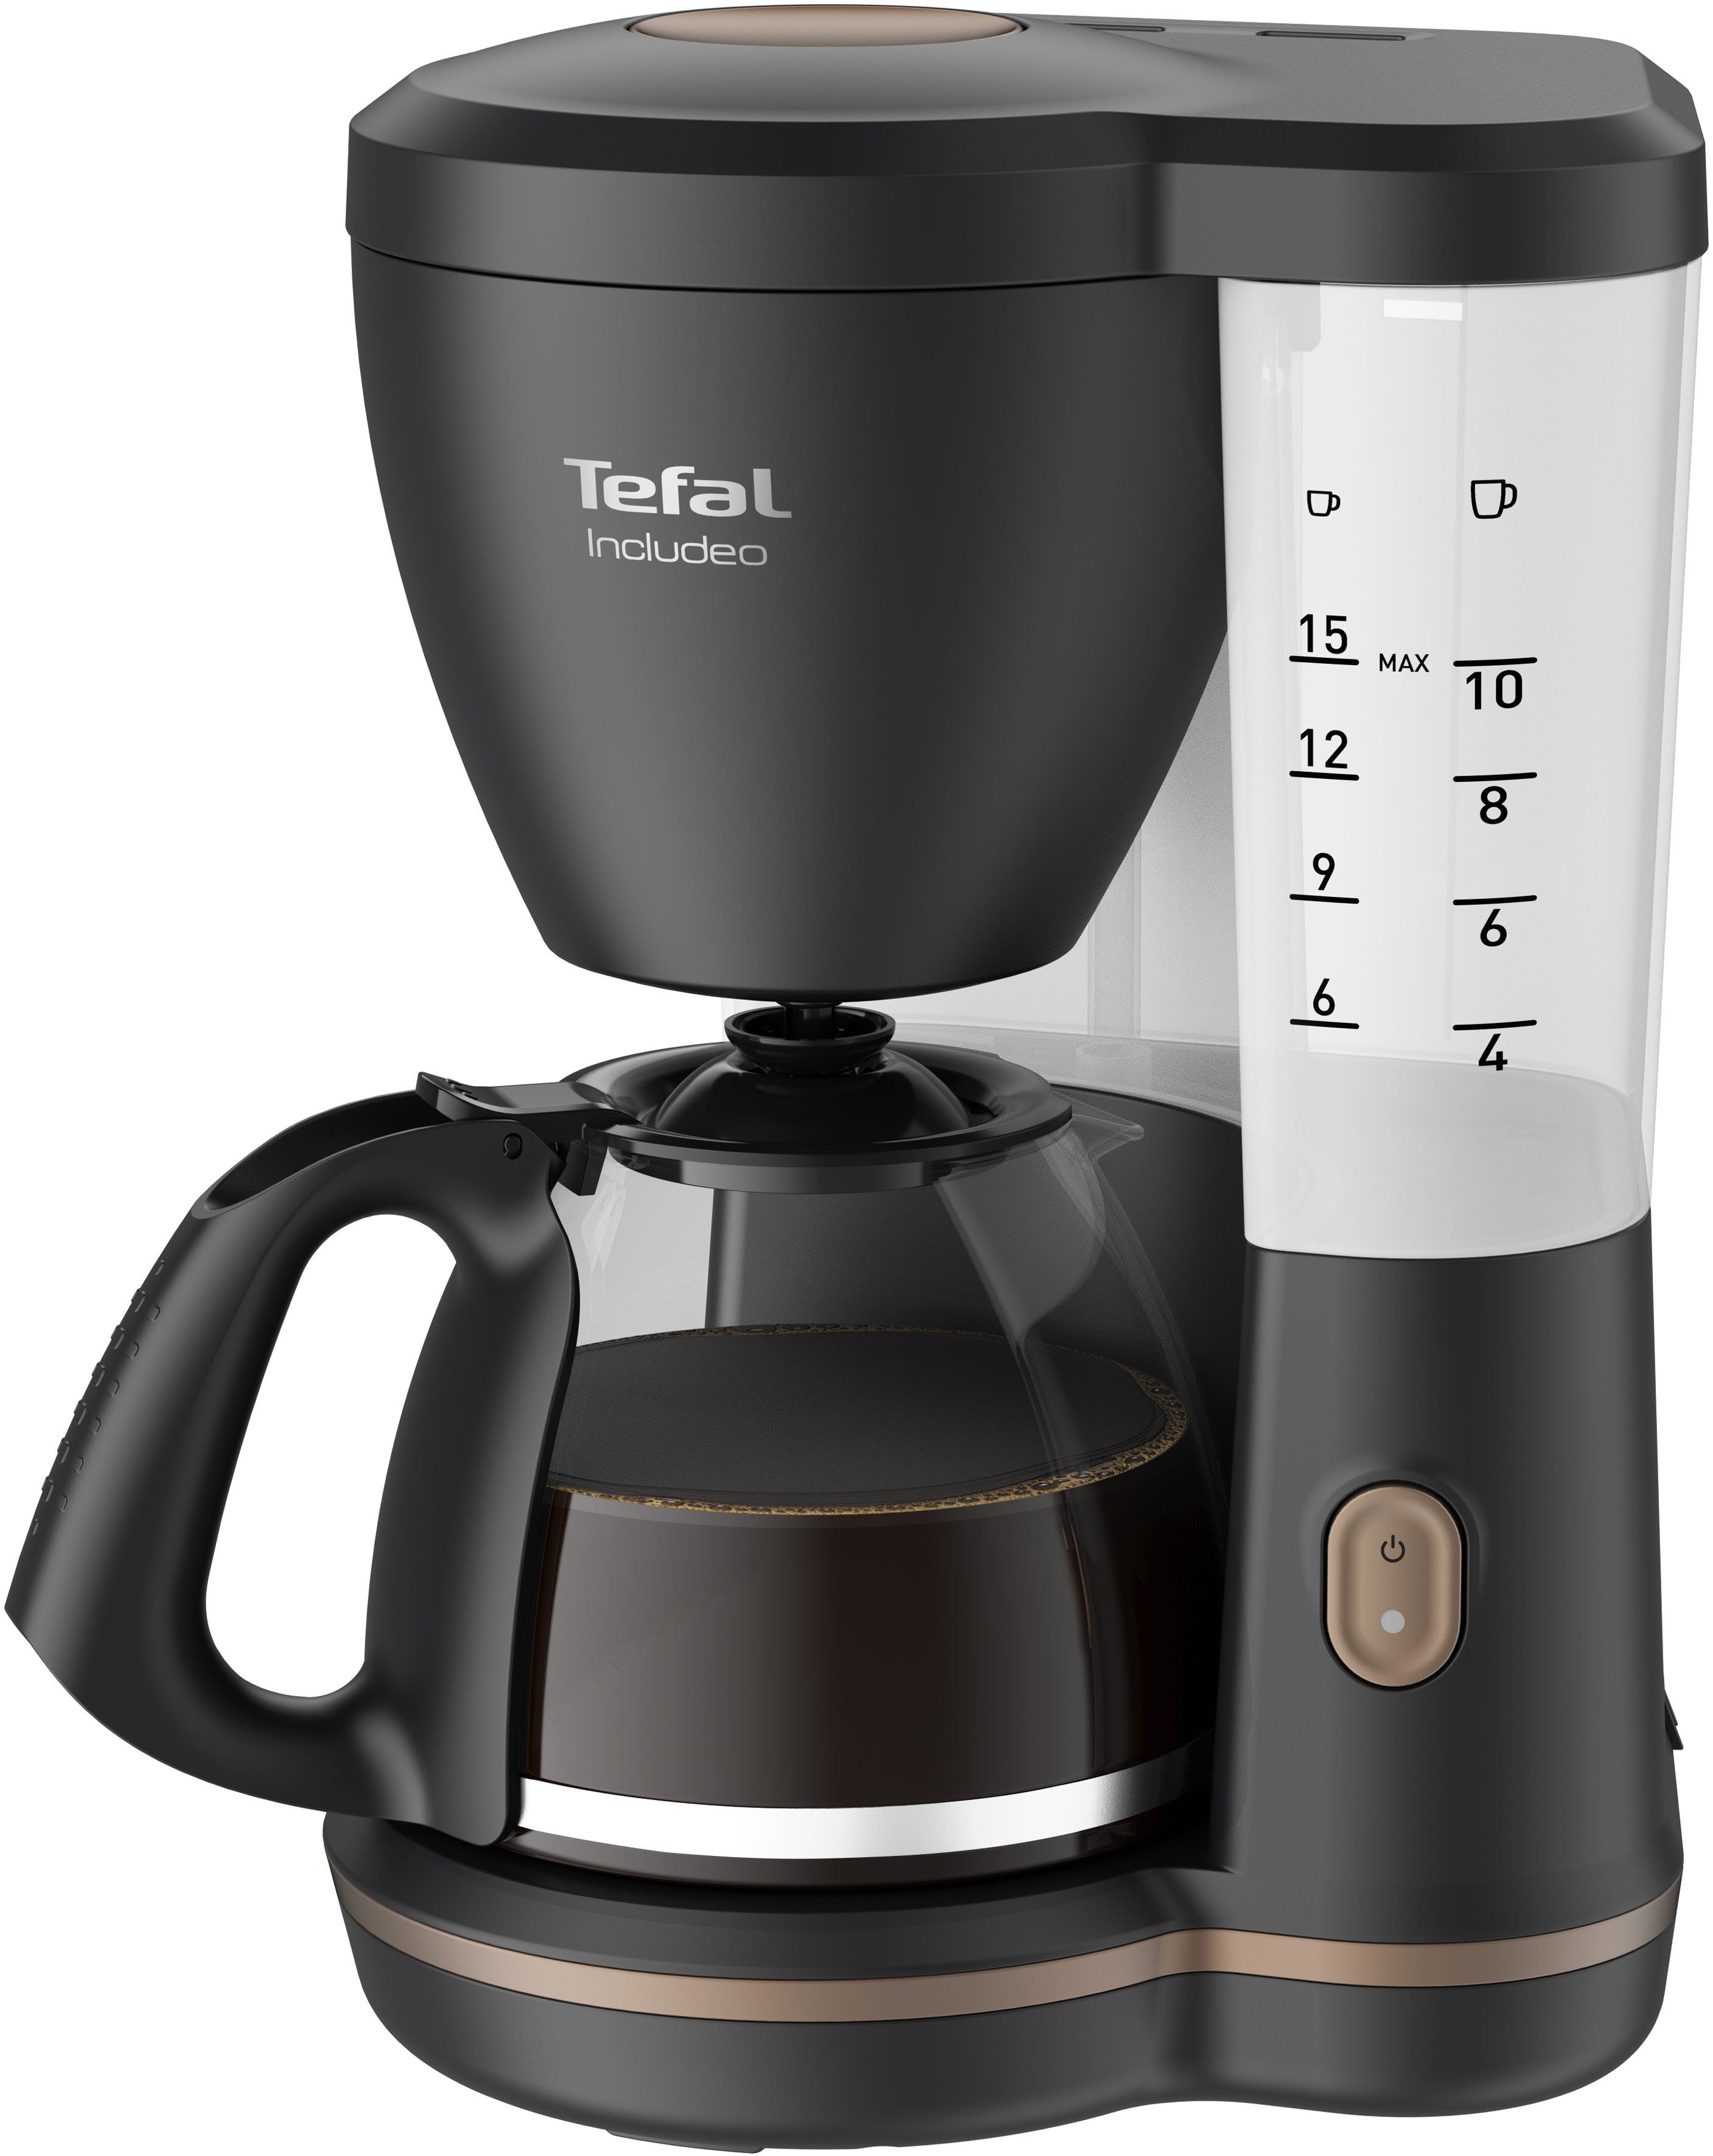 Tefal Filterkaffeemaschine CM5338 Includeo, 1.25 L, Stabile Basis:  Kaffeemaschine mit breiterer Basis für höhere Stabilität